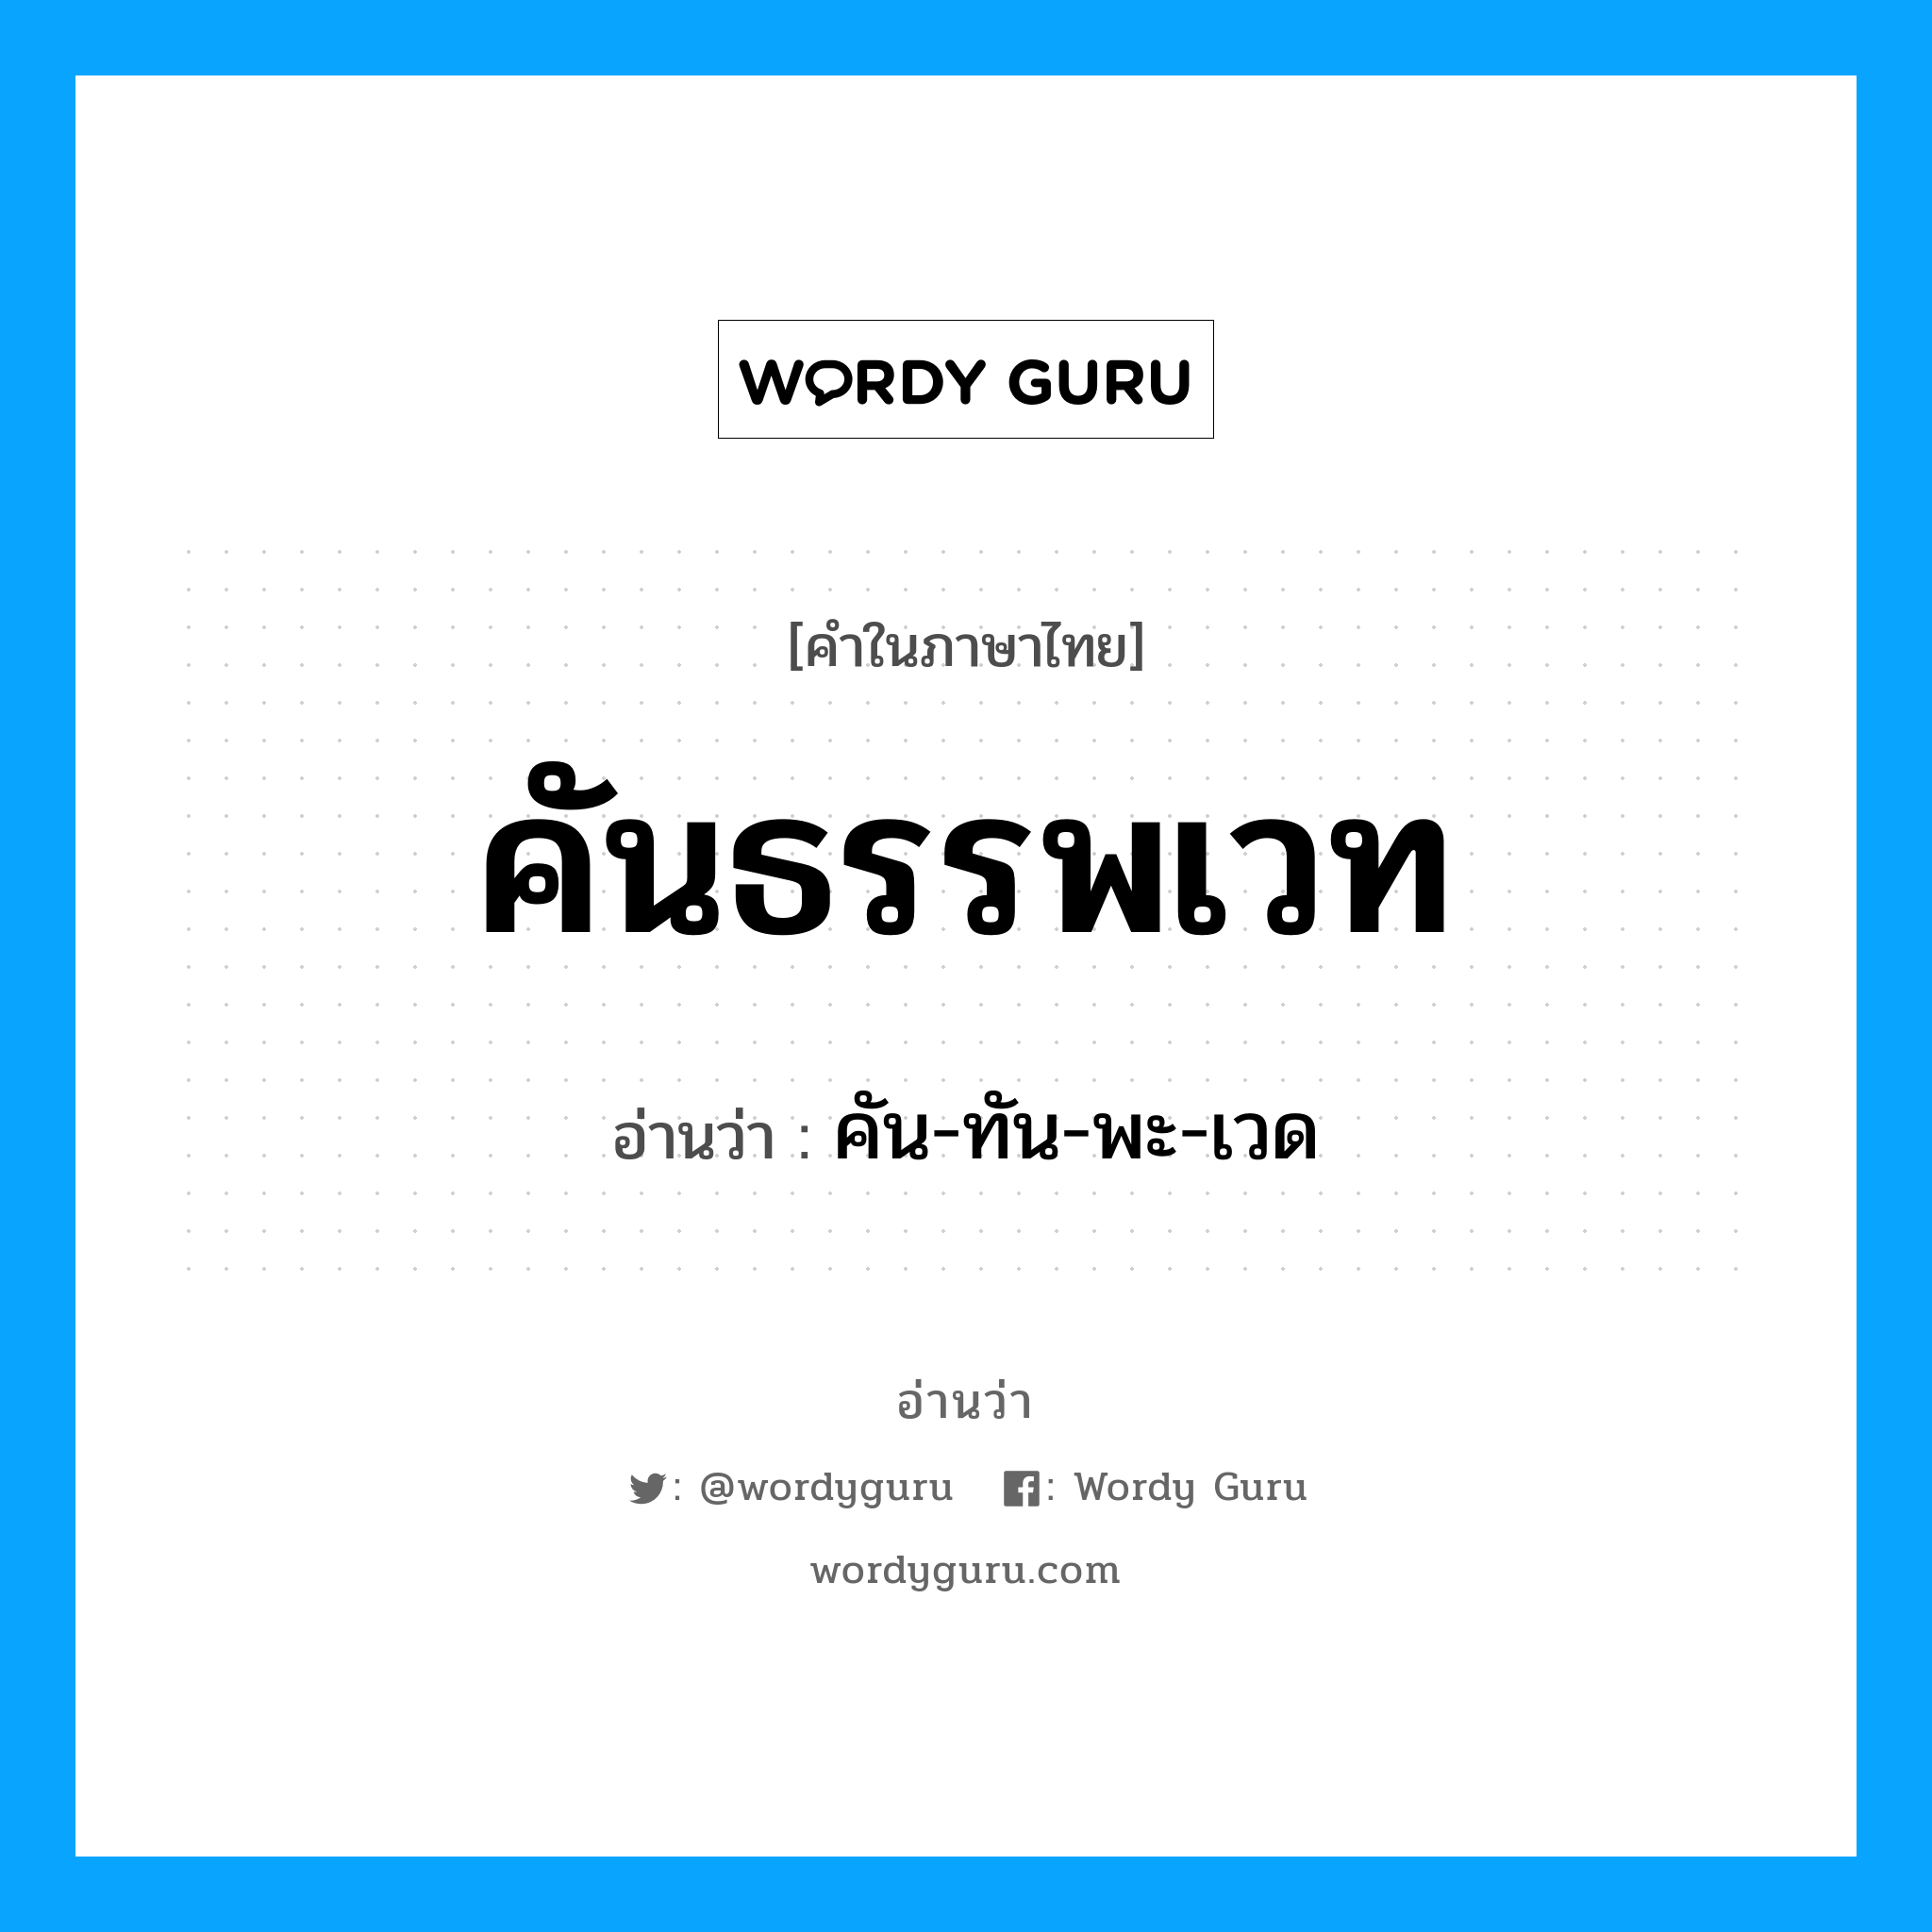 คัน-ทัน-พะ-เวด เป็นคำอ่านของคำไหน?, คำในภาษาไทย คัน-ทัน-พะ-เวด อ่านว่า คันธรรพเวท